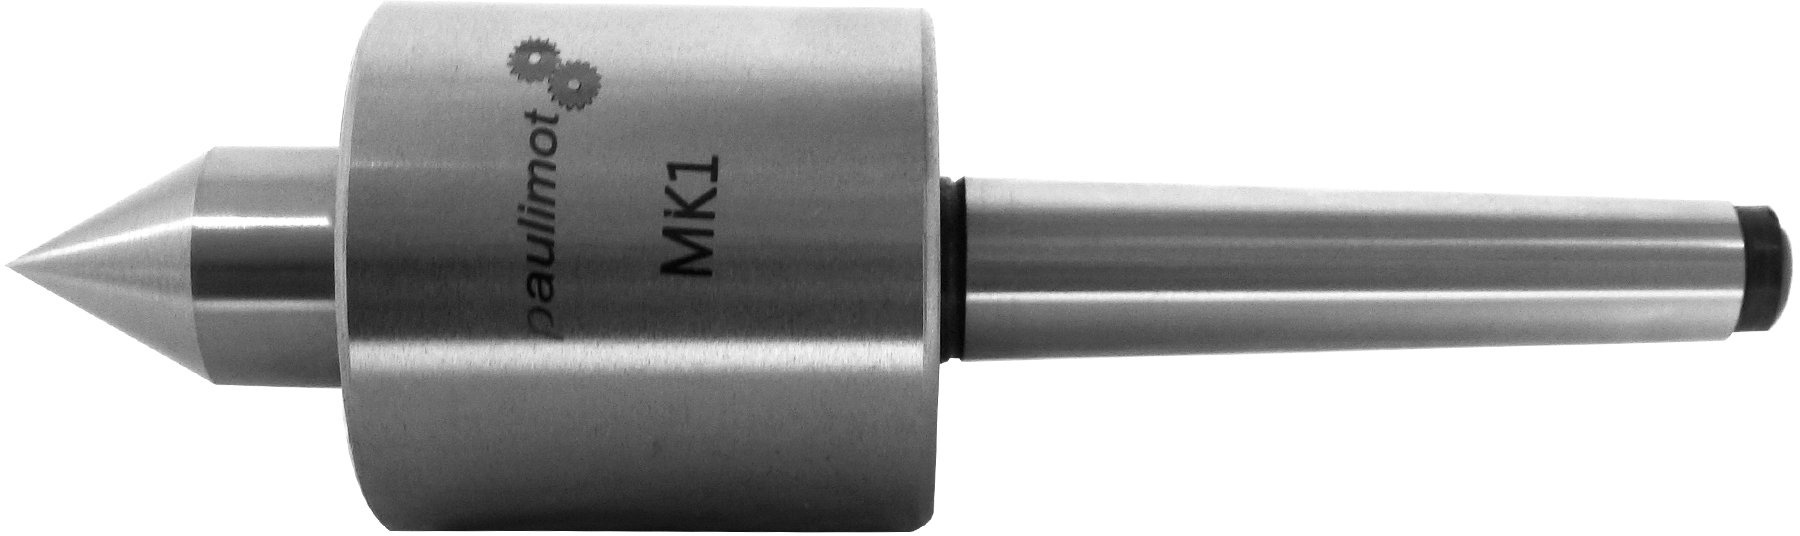 Mitlaufende Zentrierspitze MK1